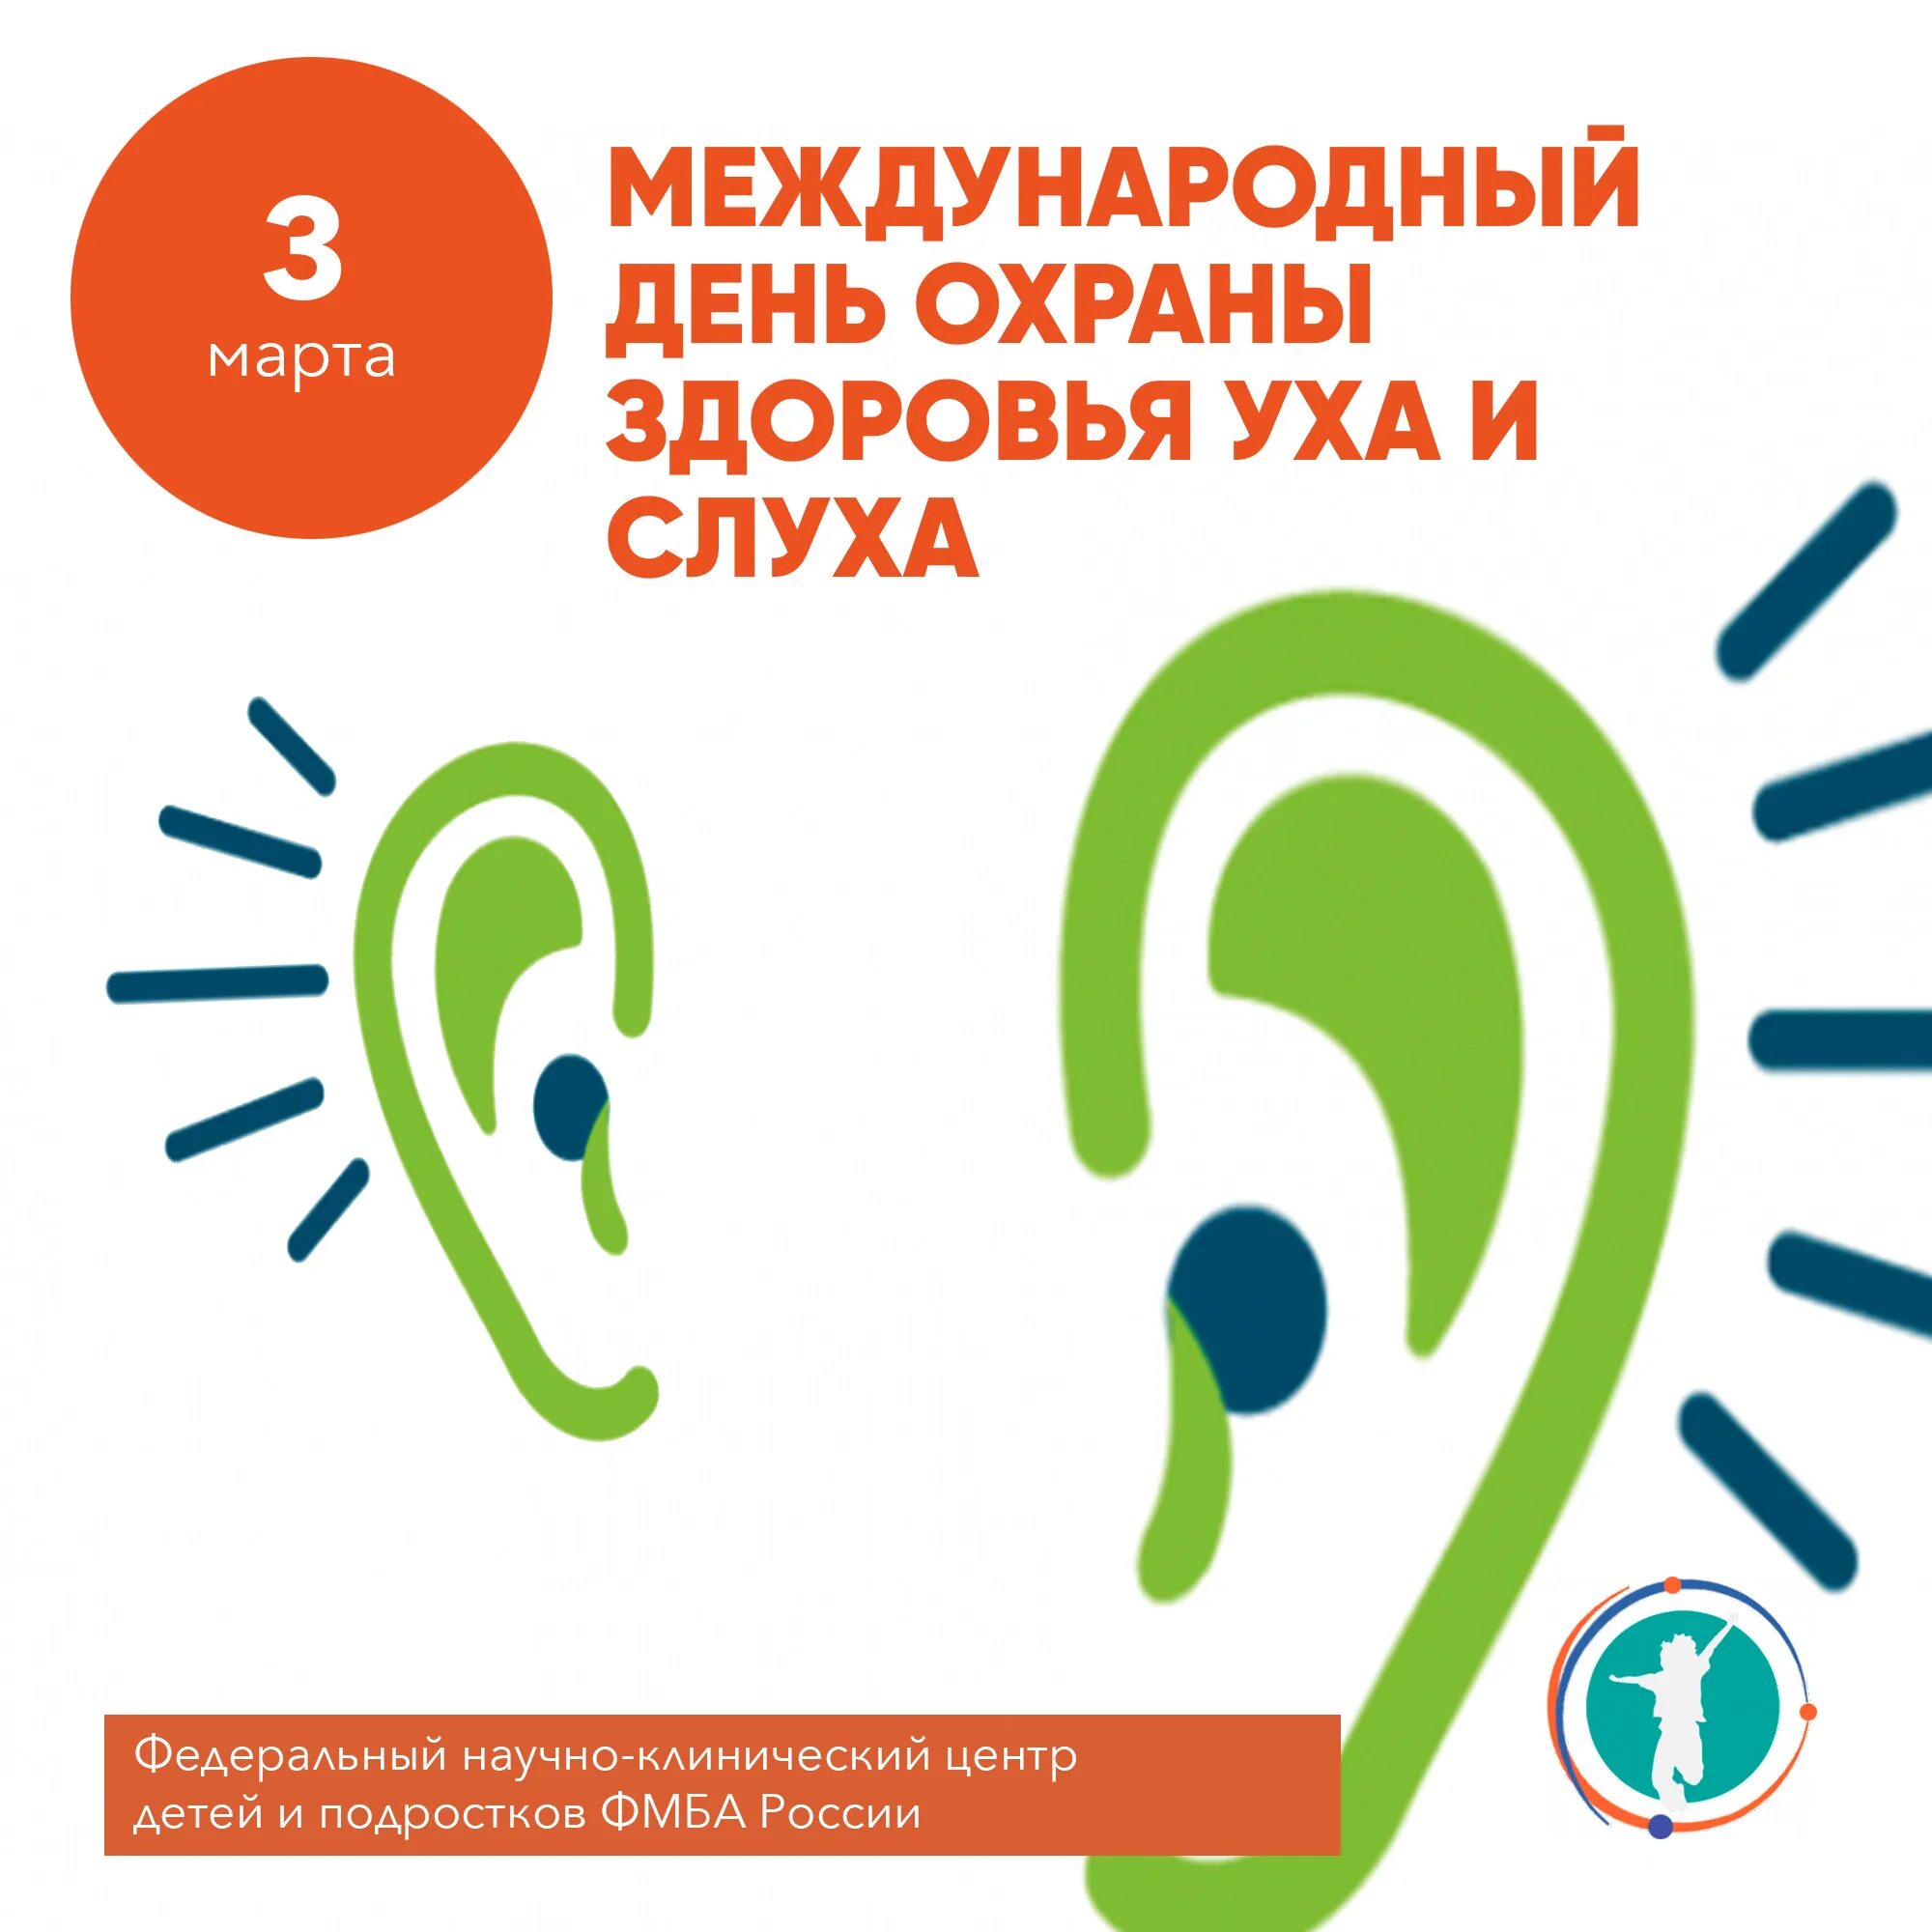 Международный день охраны здоровья уха и слуха. Всемирный день уха. Всемирный день уха и слуха.